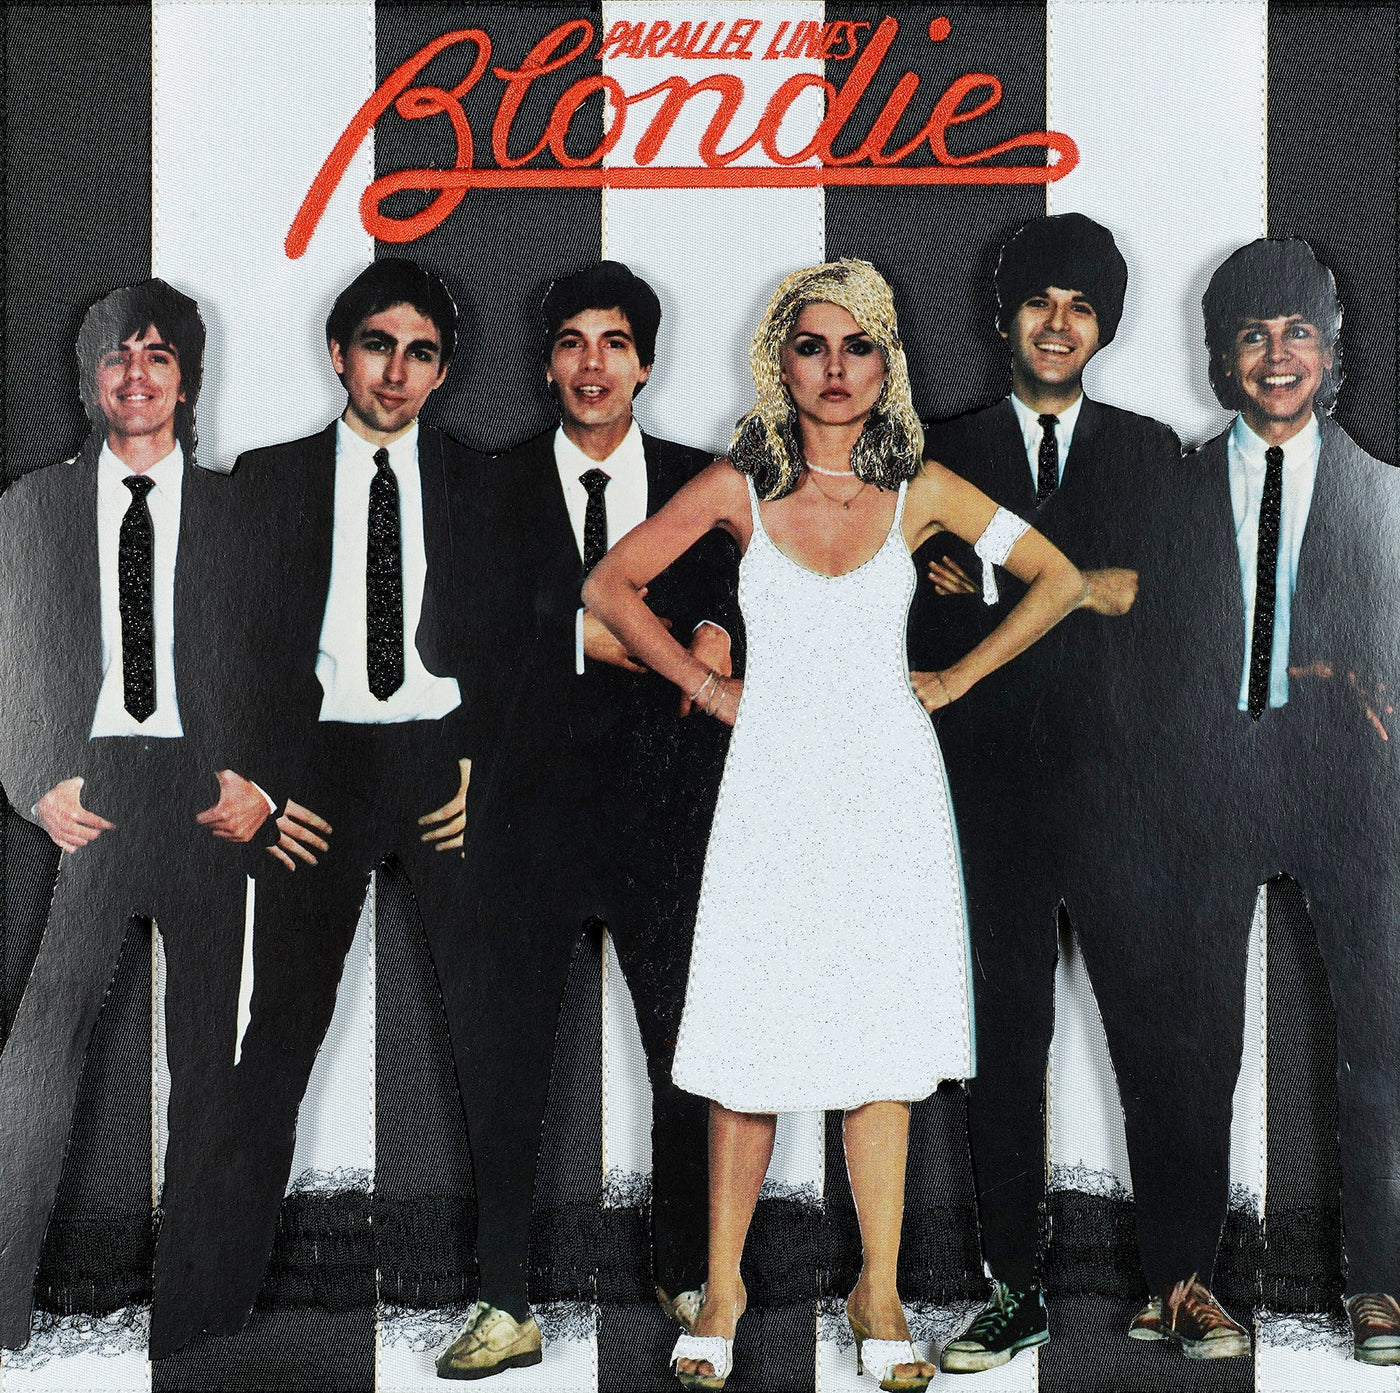 Parallel Lines - Blondie